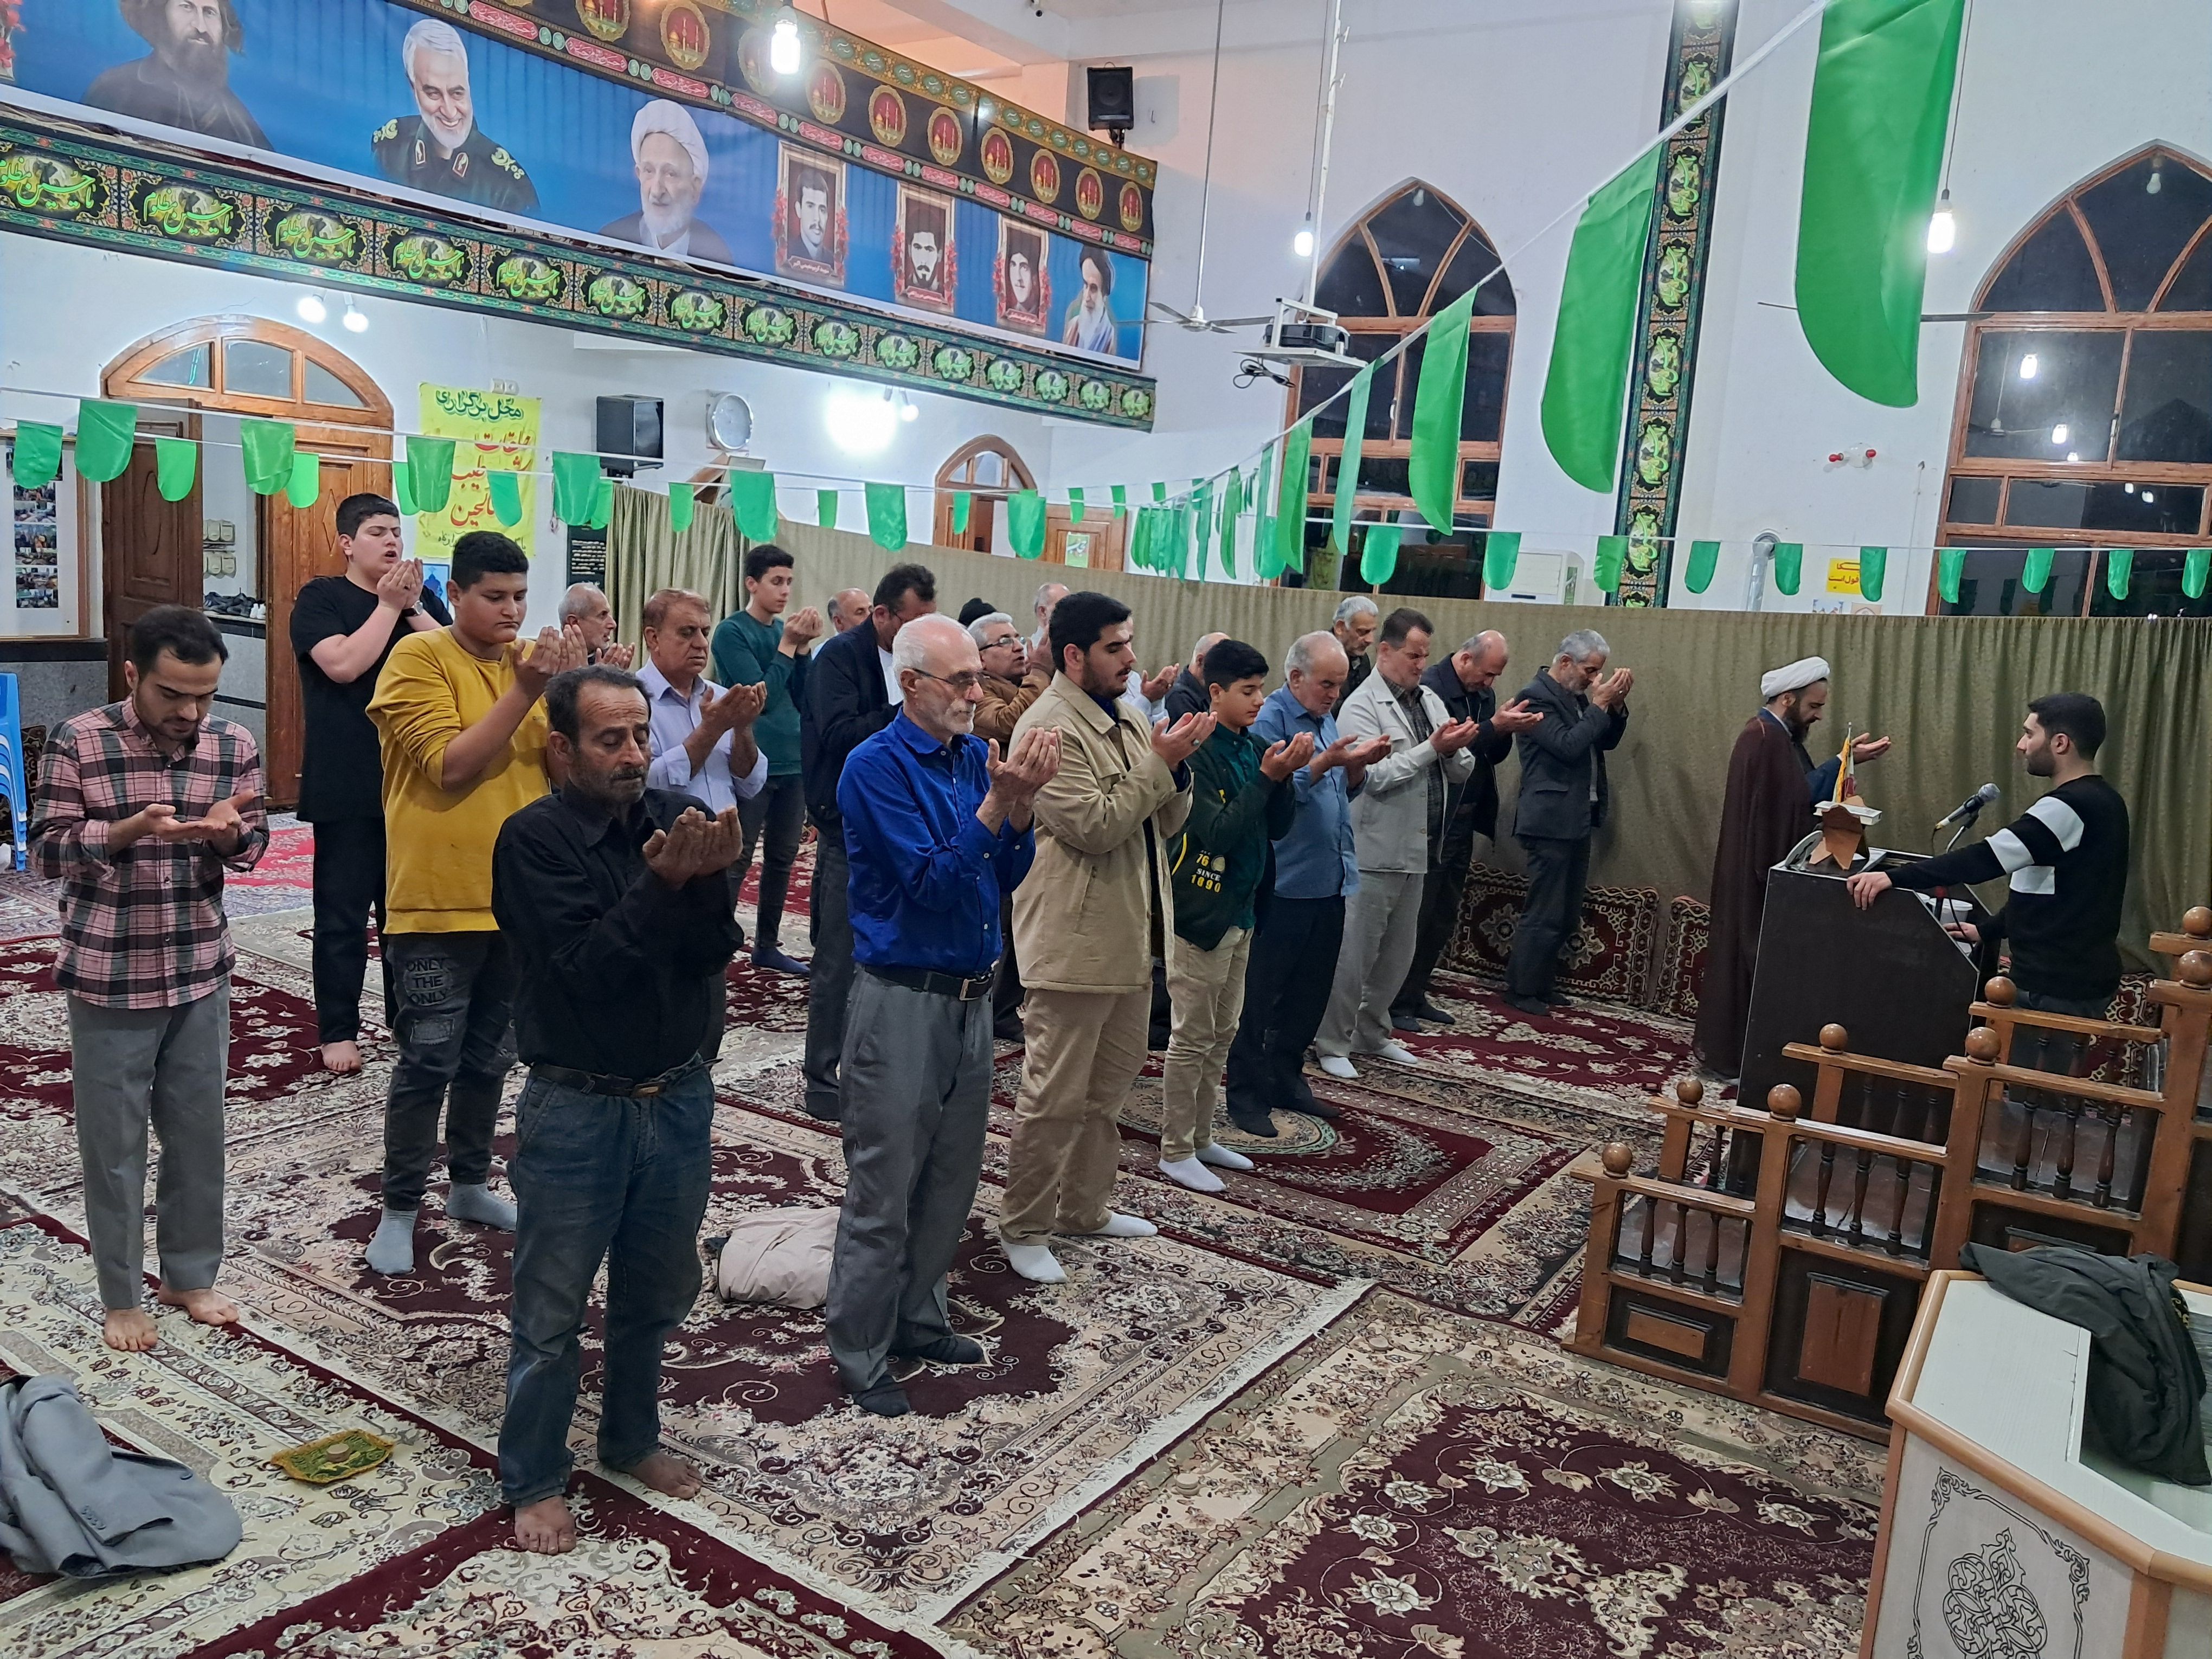 برپایی نماز جماعت به همراه تفسر و بیان احکام شرعی در کانون شهید مطهری